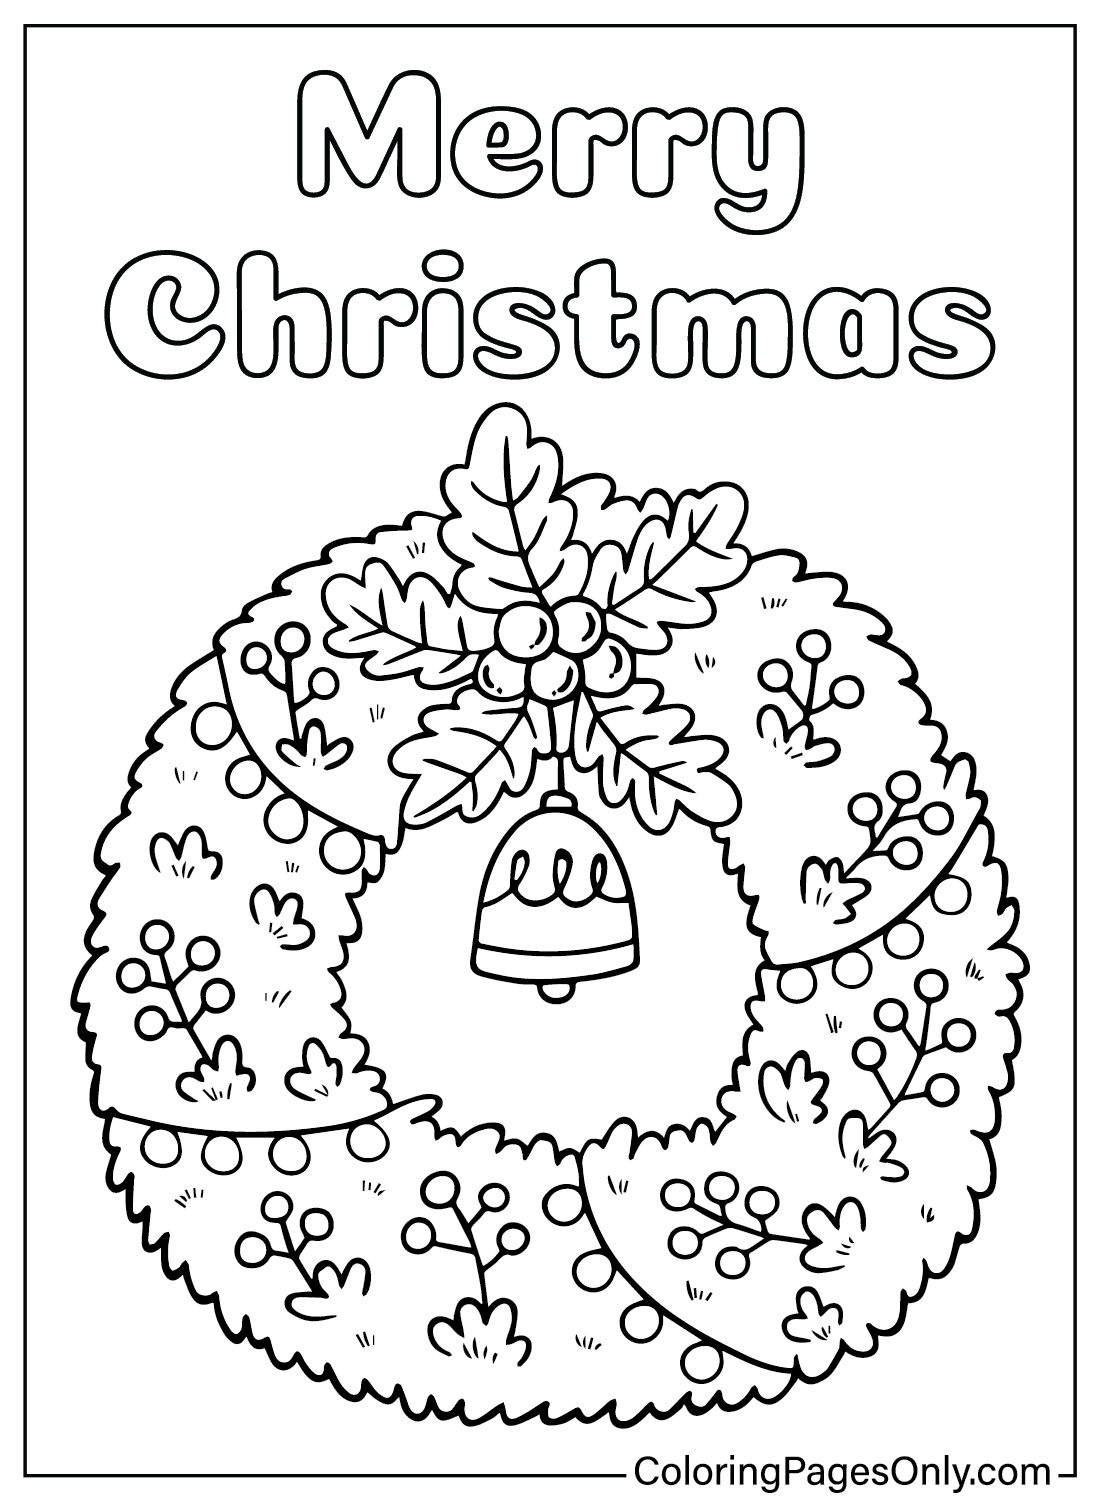 Corona de Navidad Página para colorear imprimir gratis de Corona de Navidad